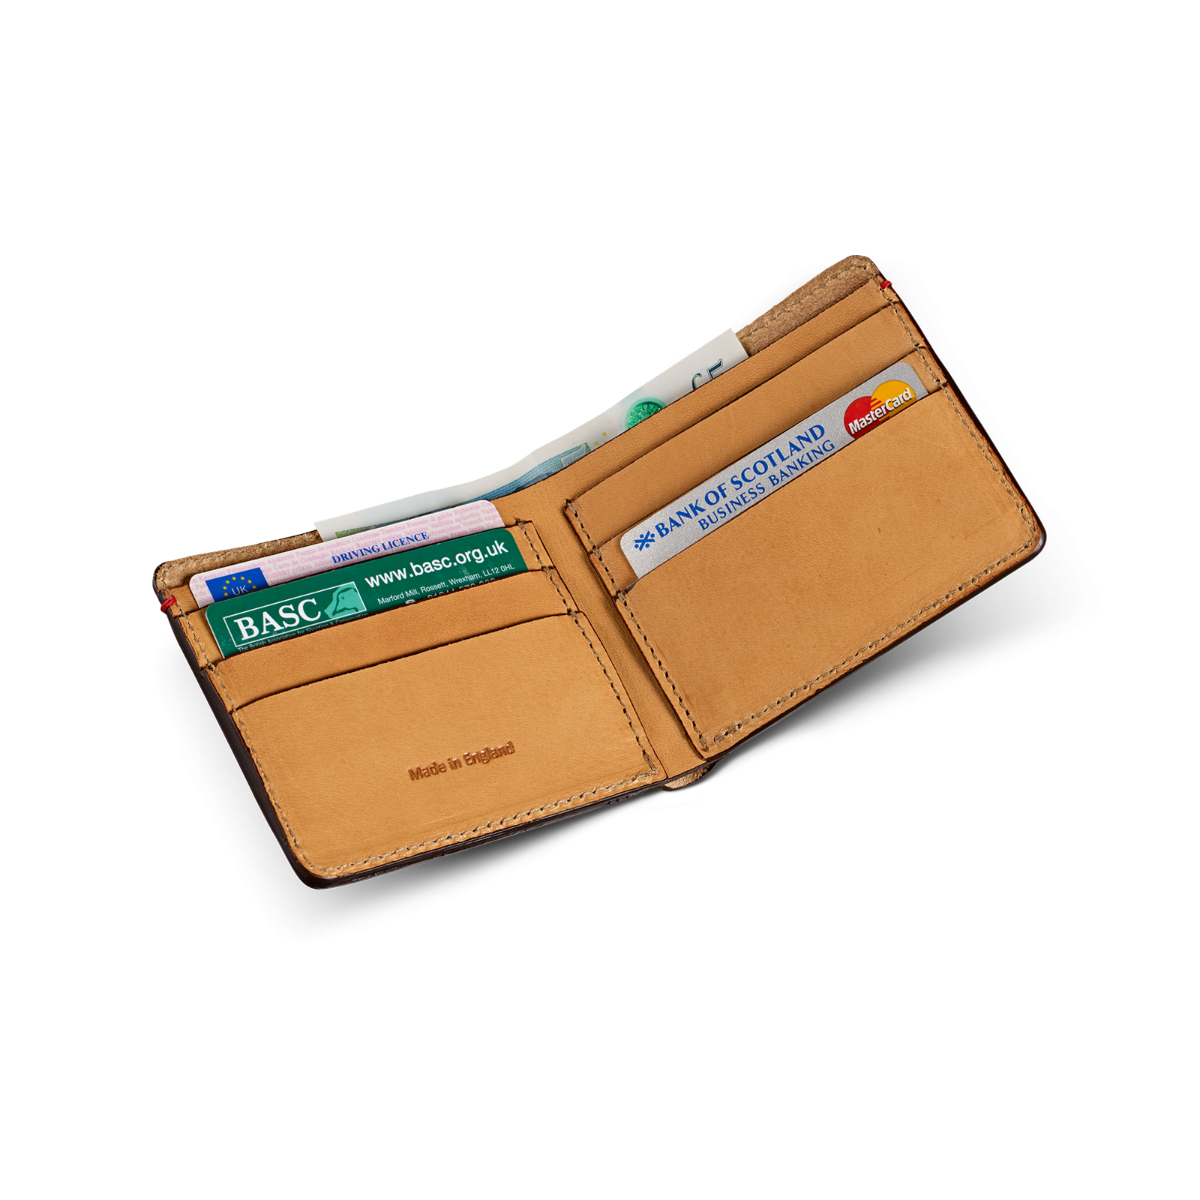 Vintage Leather Folding Wallet